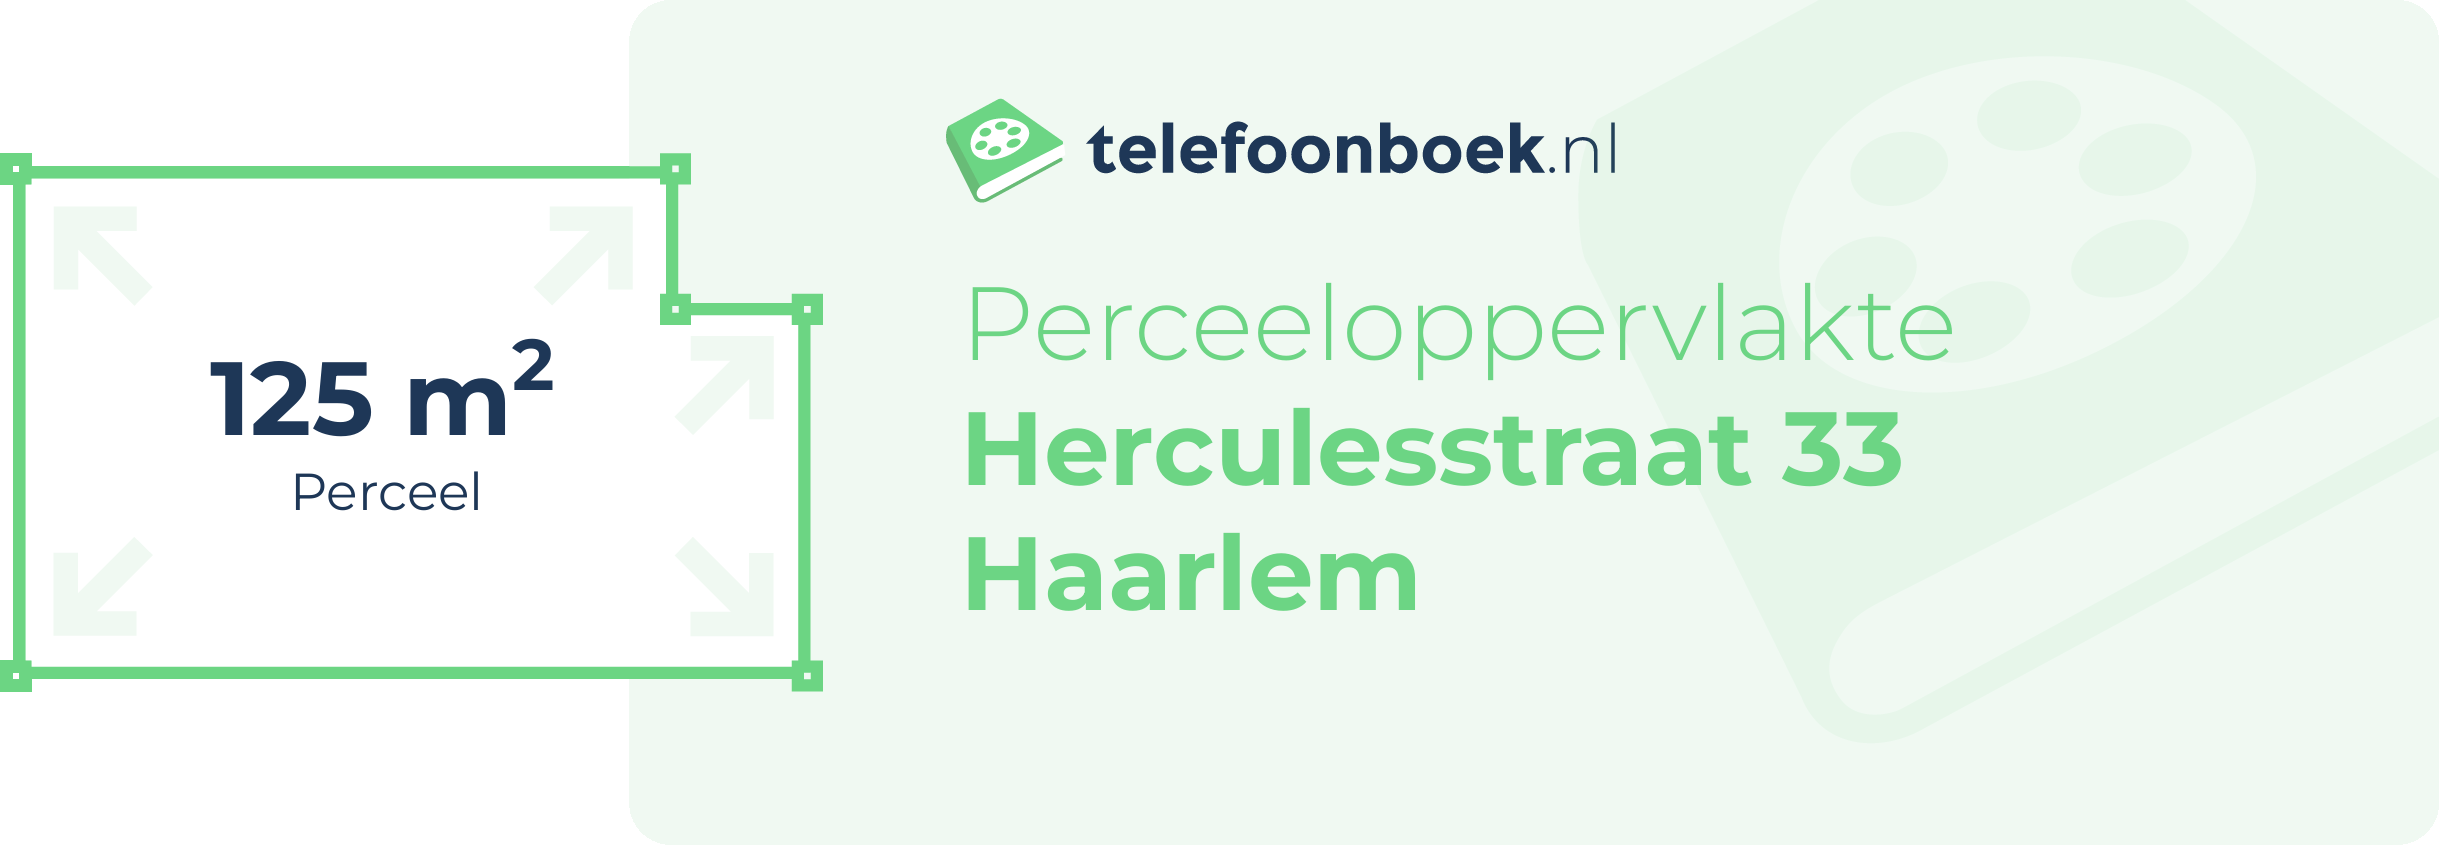 Perceeloppervlakte Herculesstraat 33 Haarlem